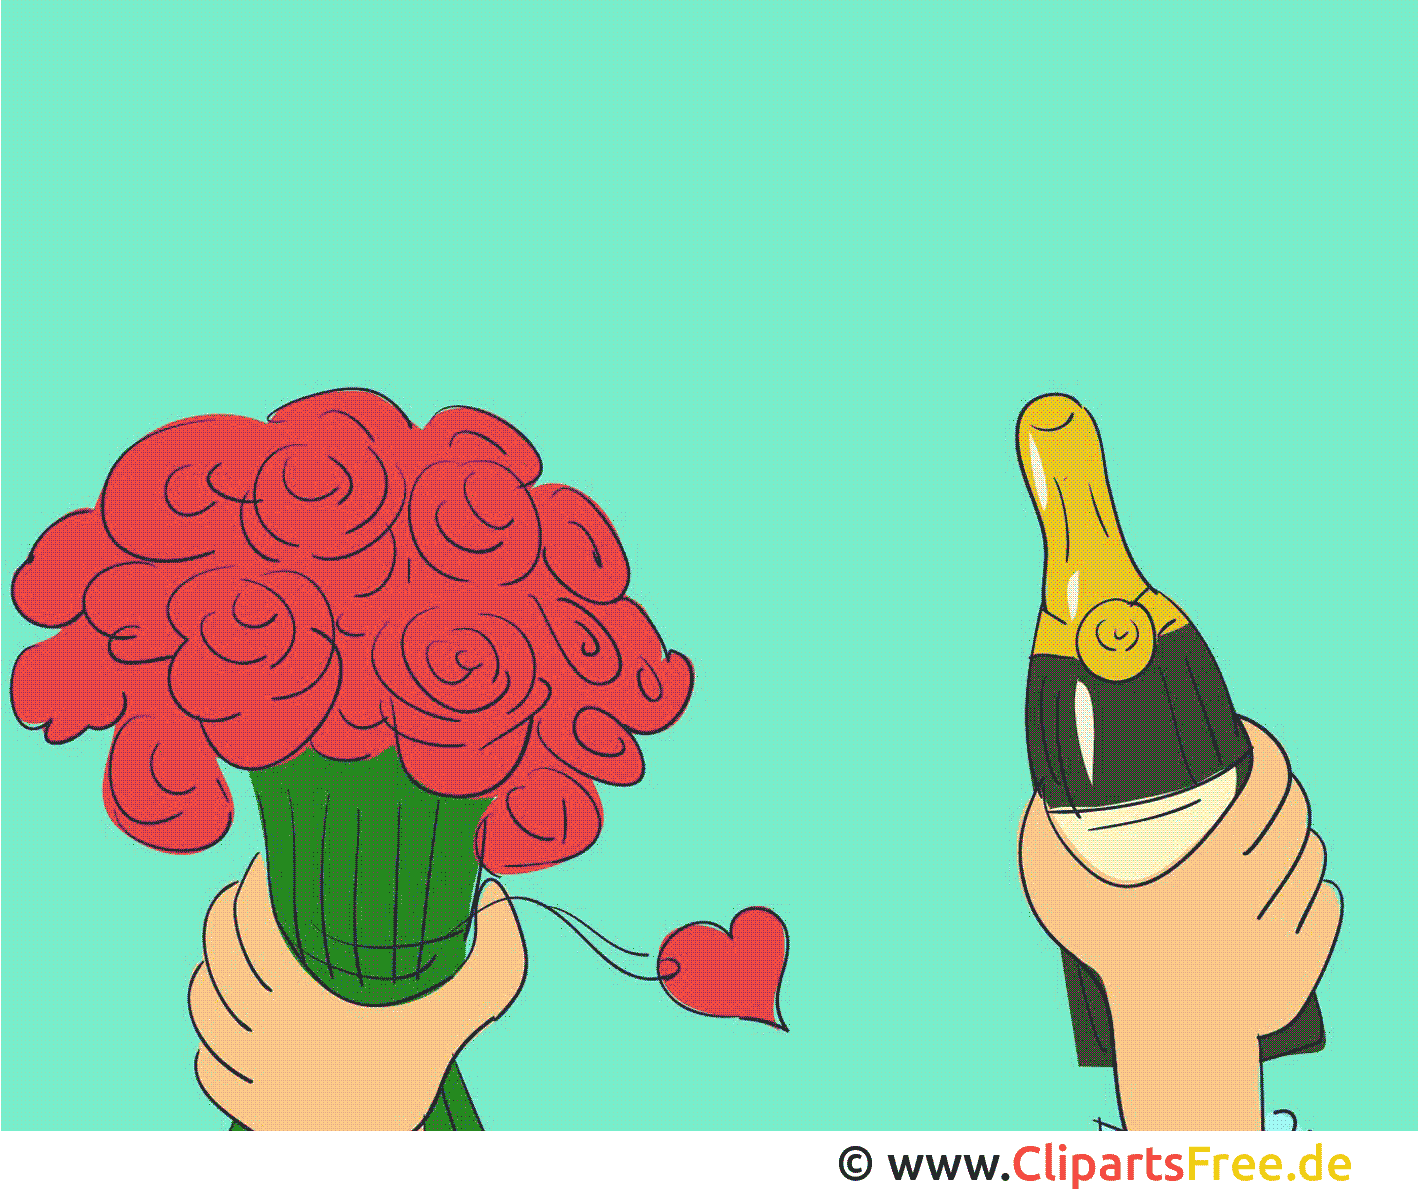 Champagne Fete Cliparts Gratuis Animation Images Gifs Animes Anniversaires Dessin Picture Image Graphic Clip Art Telecharger Gratuit